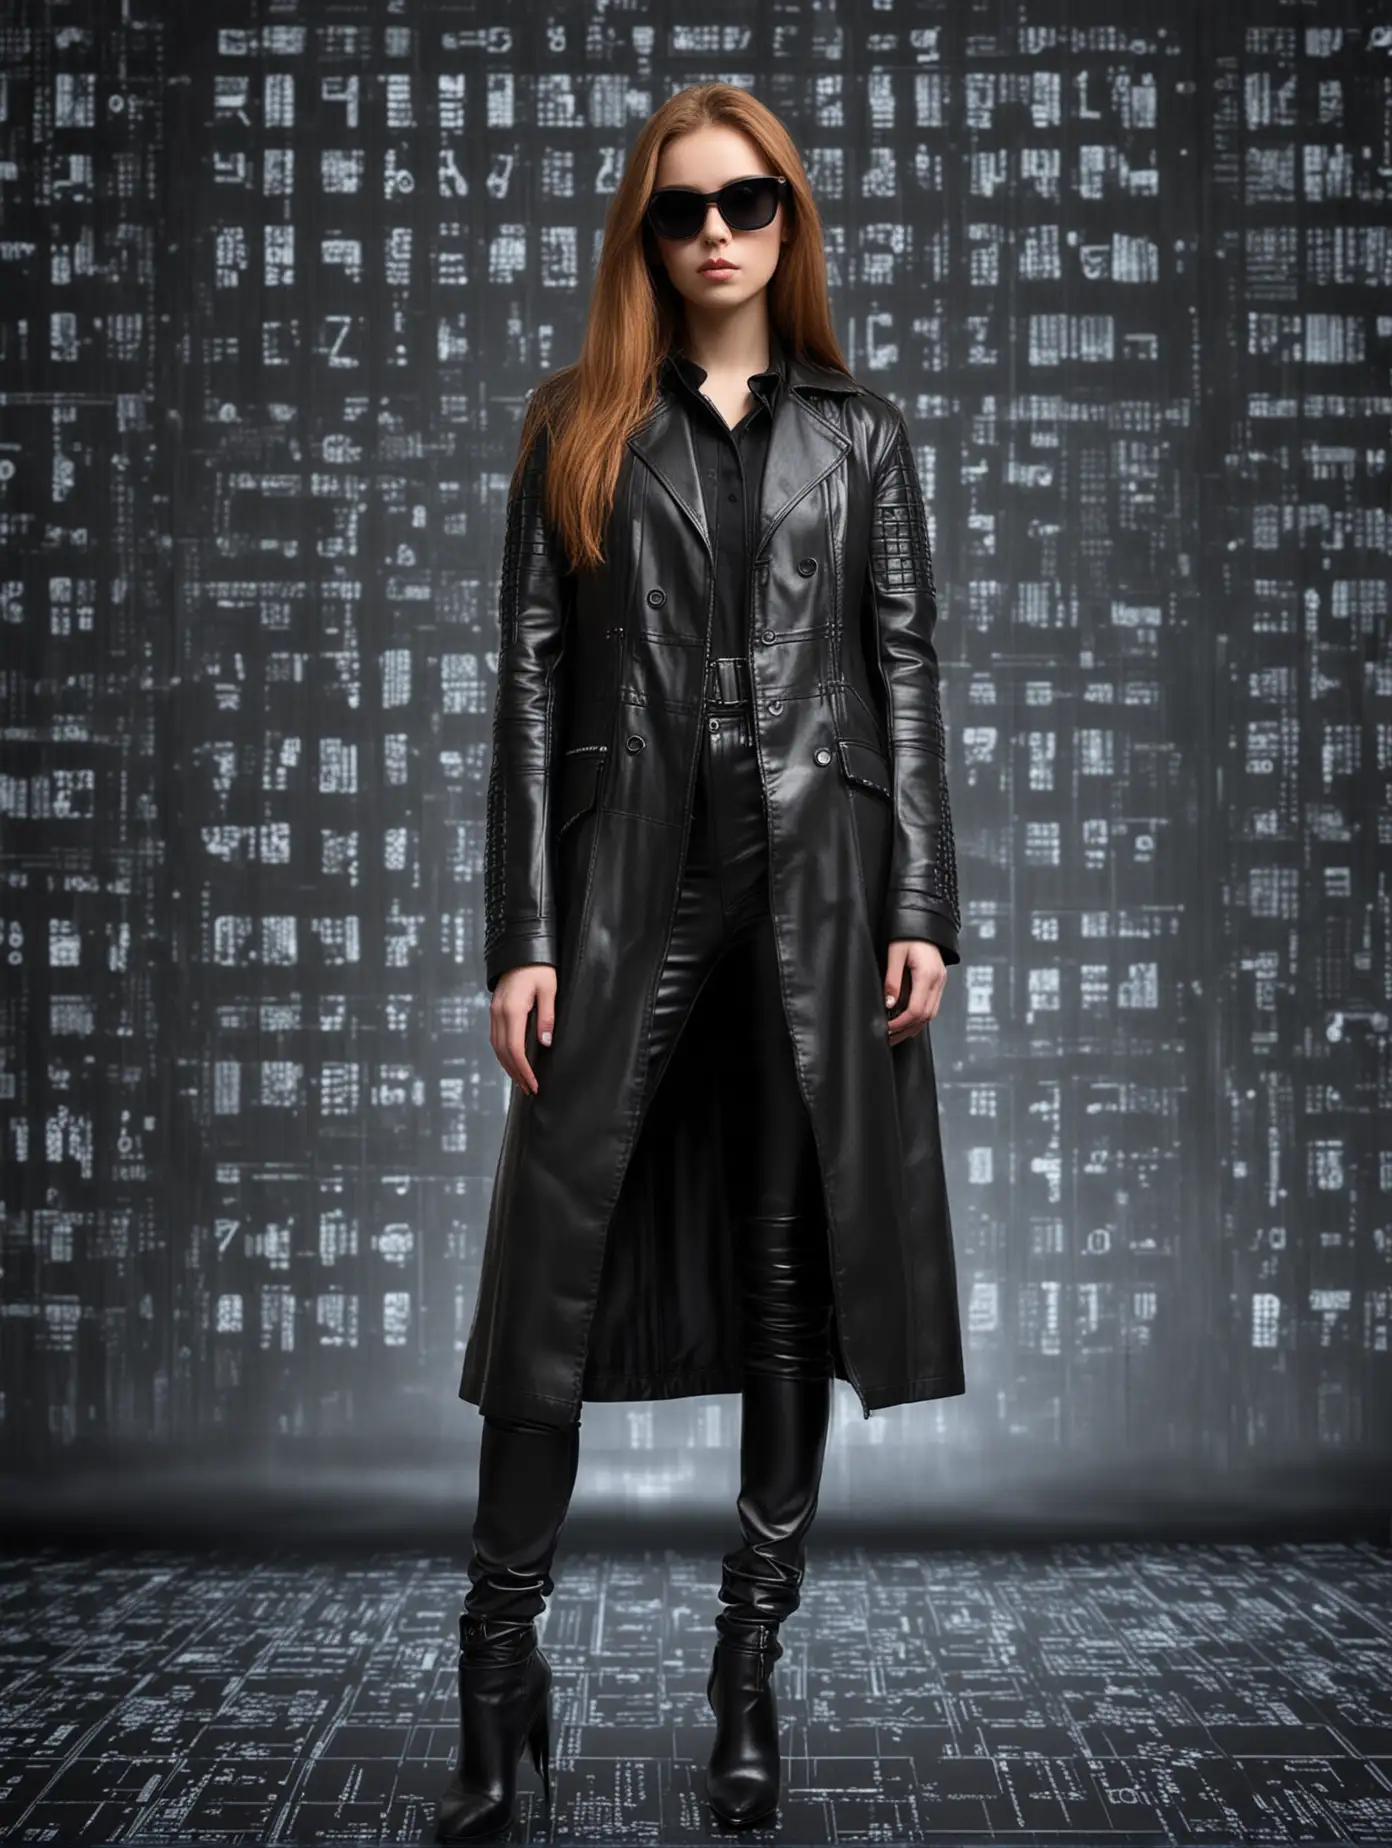 Девушка с длинными каштановыми волосами, в длинном черном кожаном плаще, в полный рост, в черных солнцезащитных очках на фоне цифрового кода в стиле Матрицы